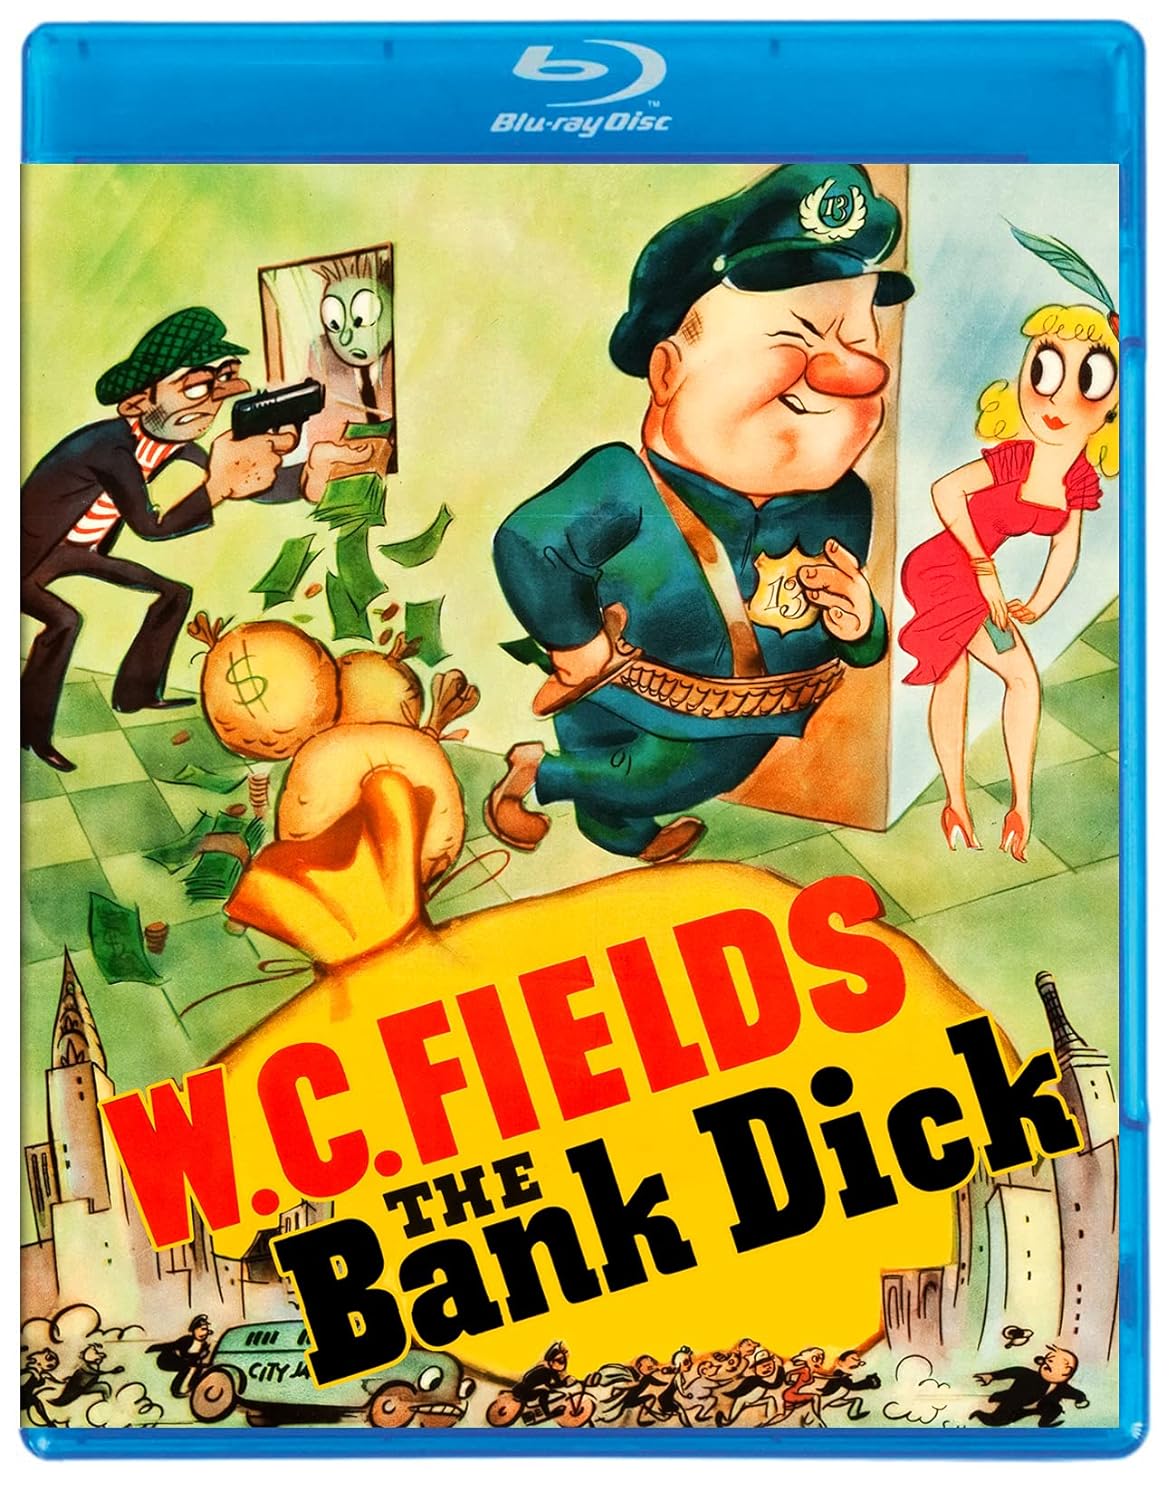 Bank Dick